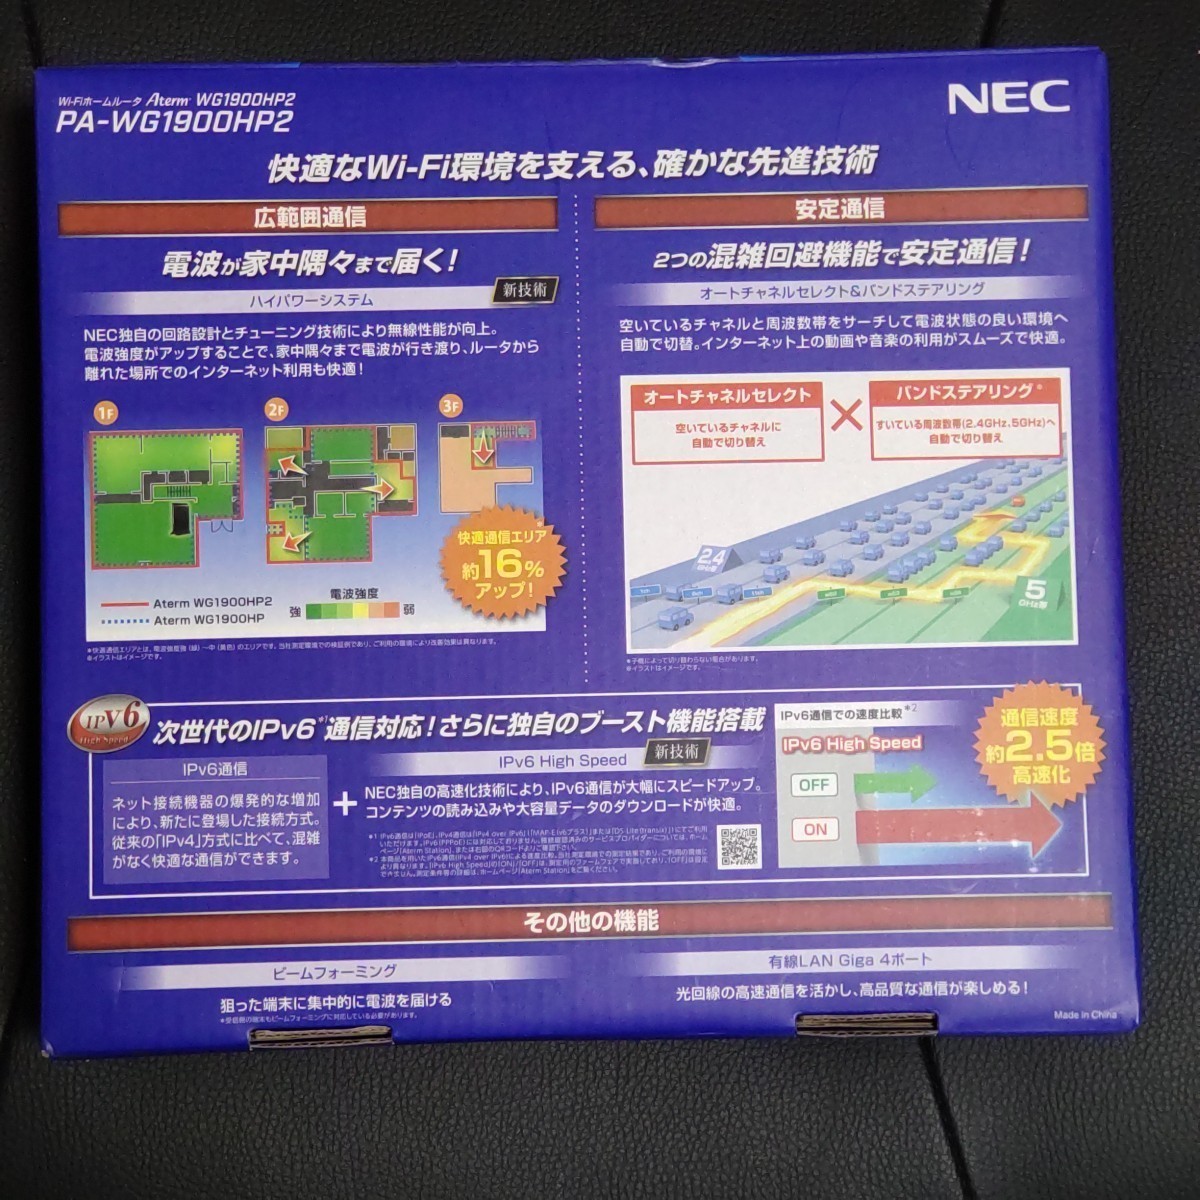 NEC Aterm WG1900HP2 [ беспроводной LAN маршрутизатор /1300+600Mbps] родители машина одиночный (11ac соответствует ) номер образца :PA-WG1900HP2